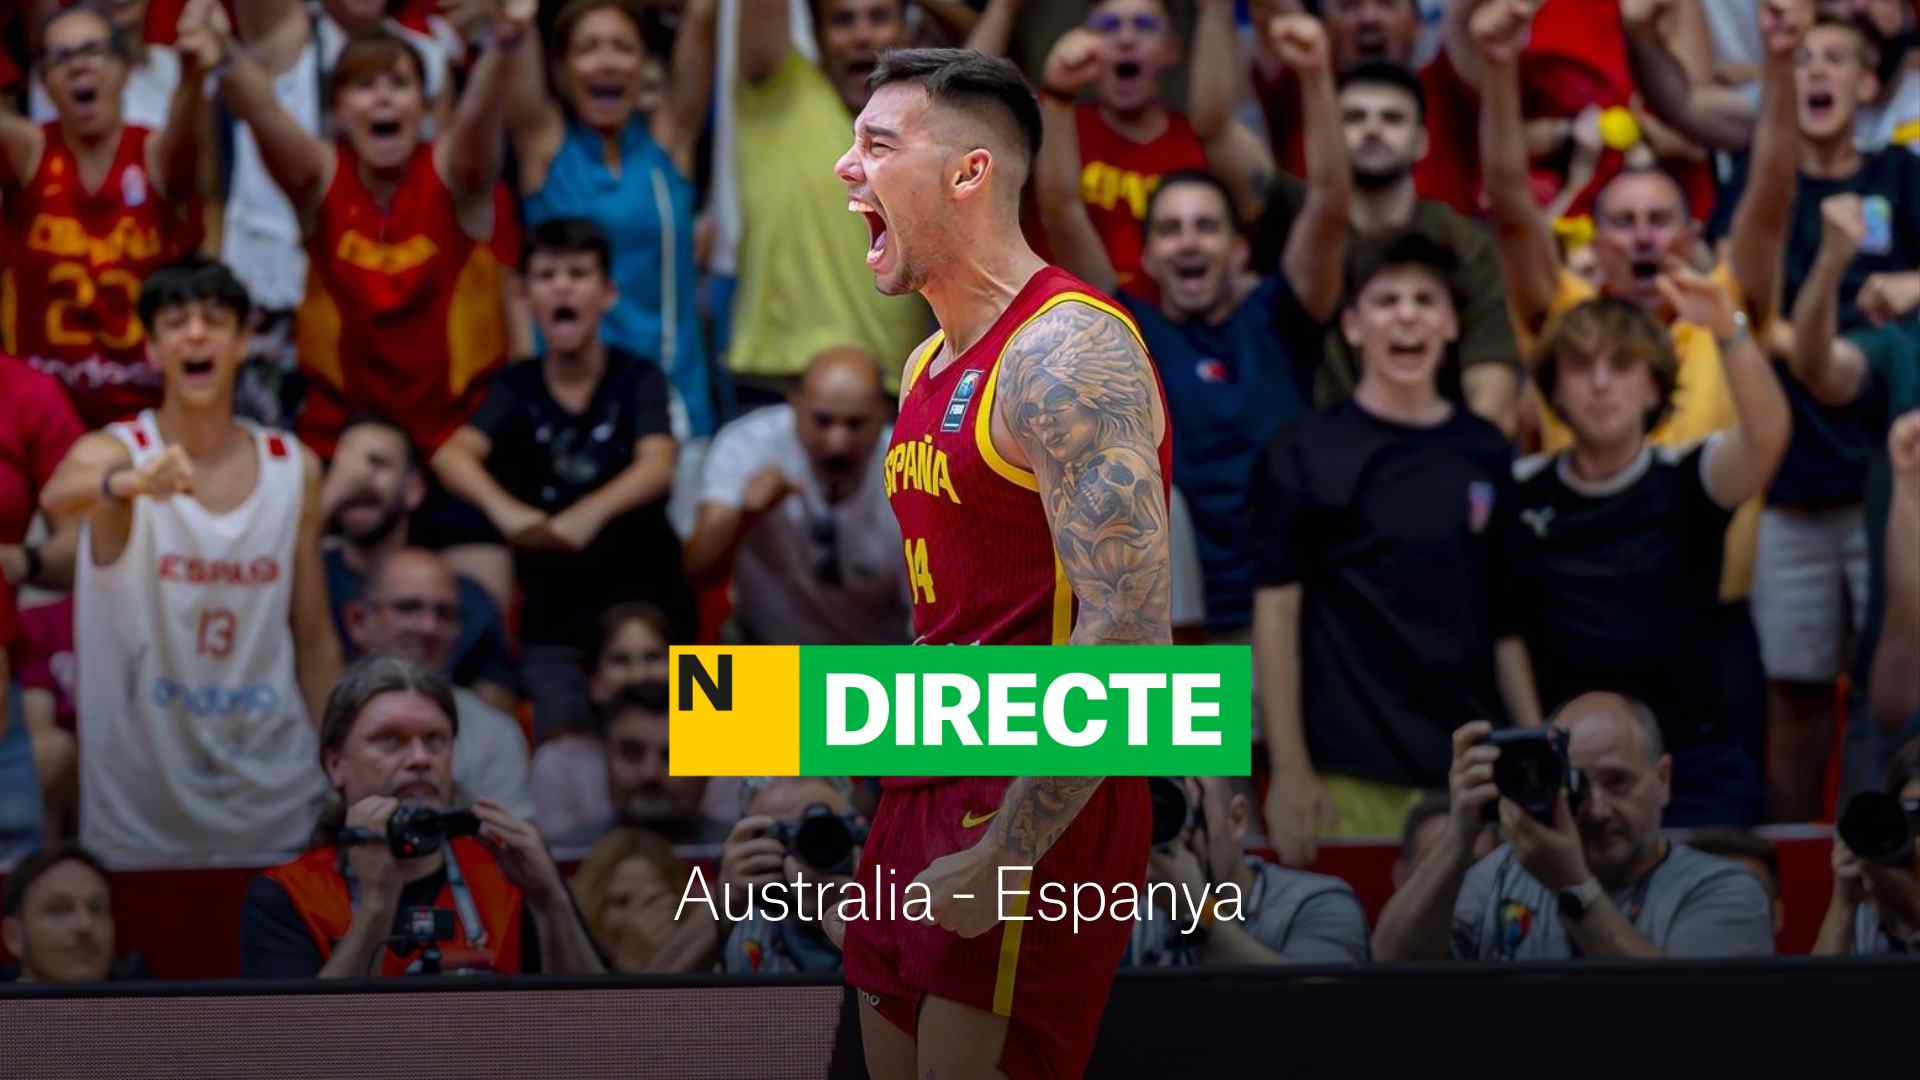 Austràlia - Espanya de bàsquet dels Jocs Olímpics París 2024, DIRECTE | Resultat i resum